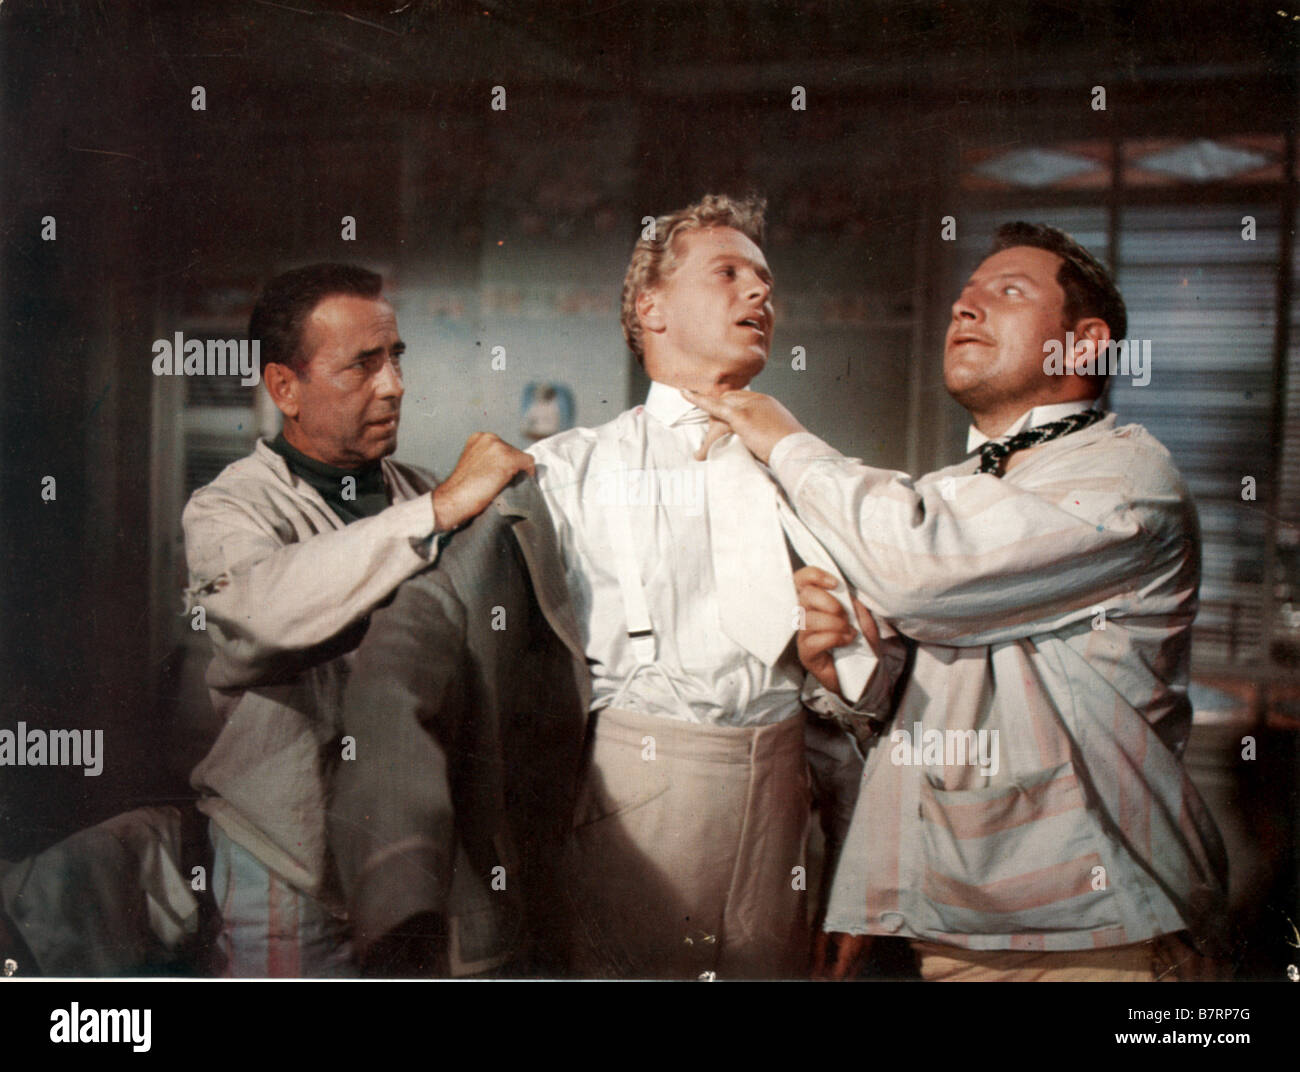 LA CUISINE DES Anges no somos ángeles Año: 1955 Estados Unidos Humphrey Bogart, Peter Ustinov Director: Michael Curtiz Foto de stock